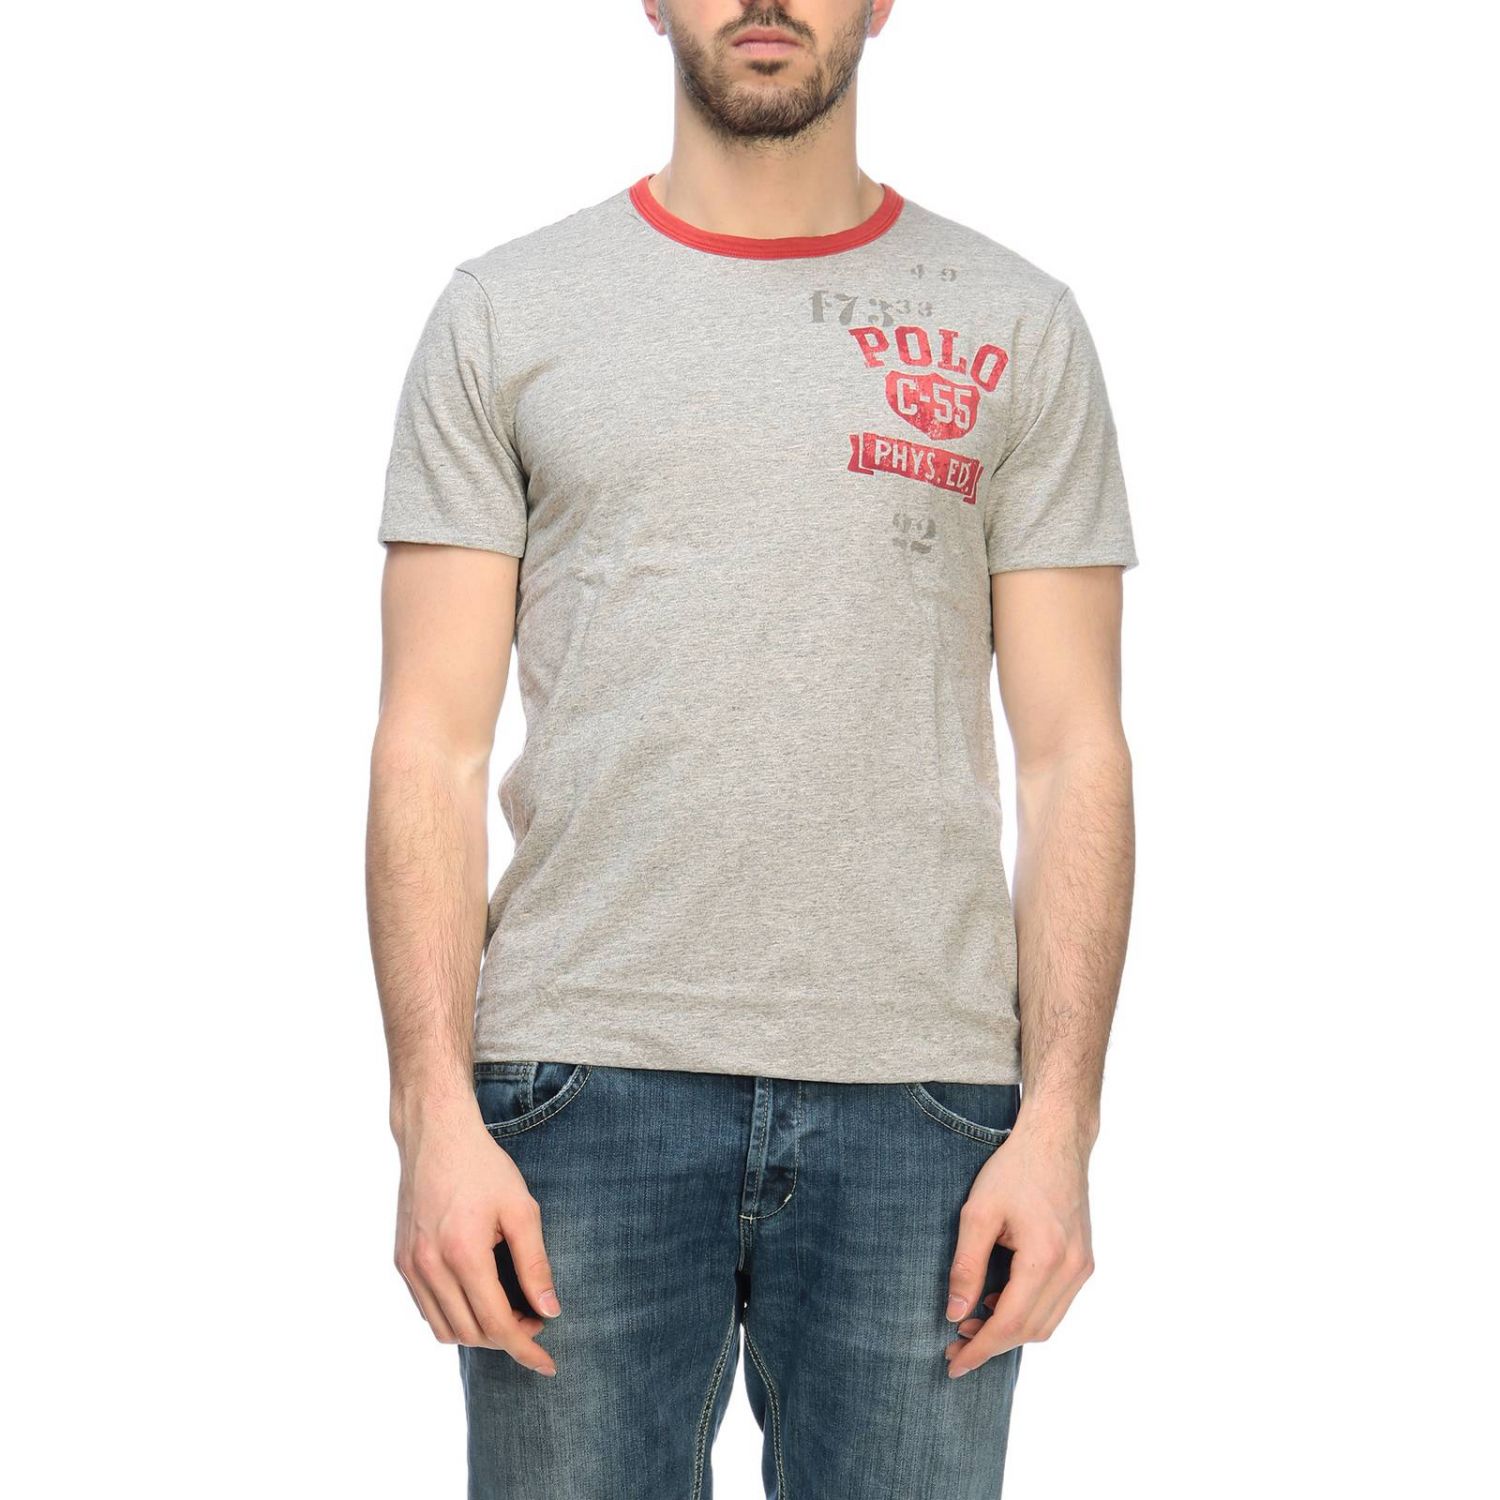 Polo Ralph Lauren Outlet: t-shirt for man - Grey | Polo Ralph Lauren t ...